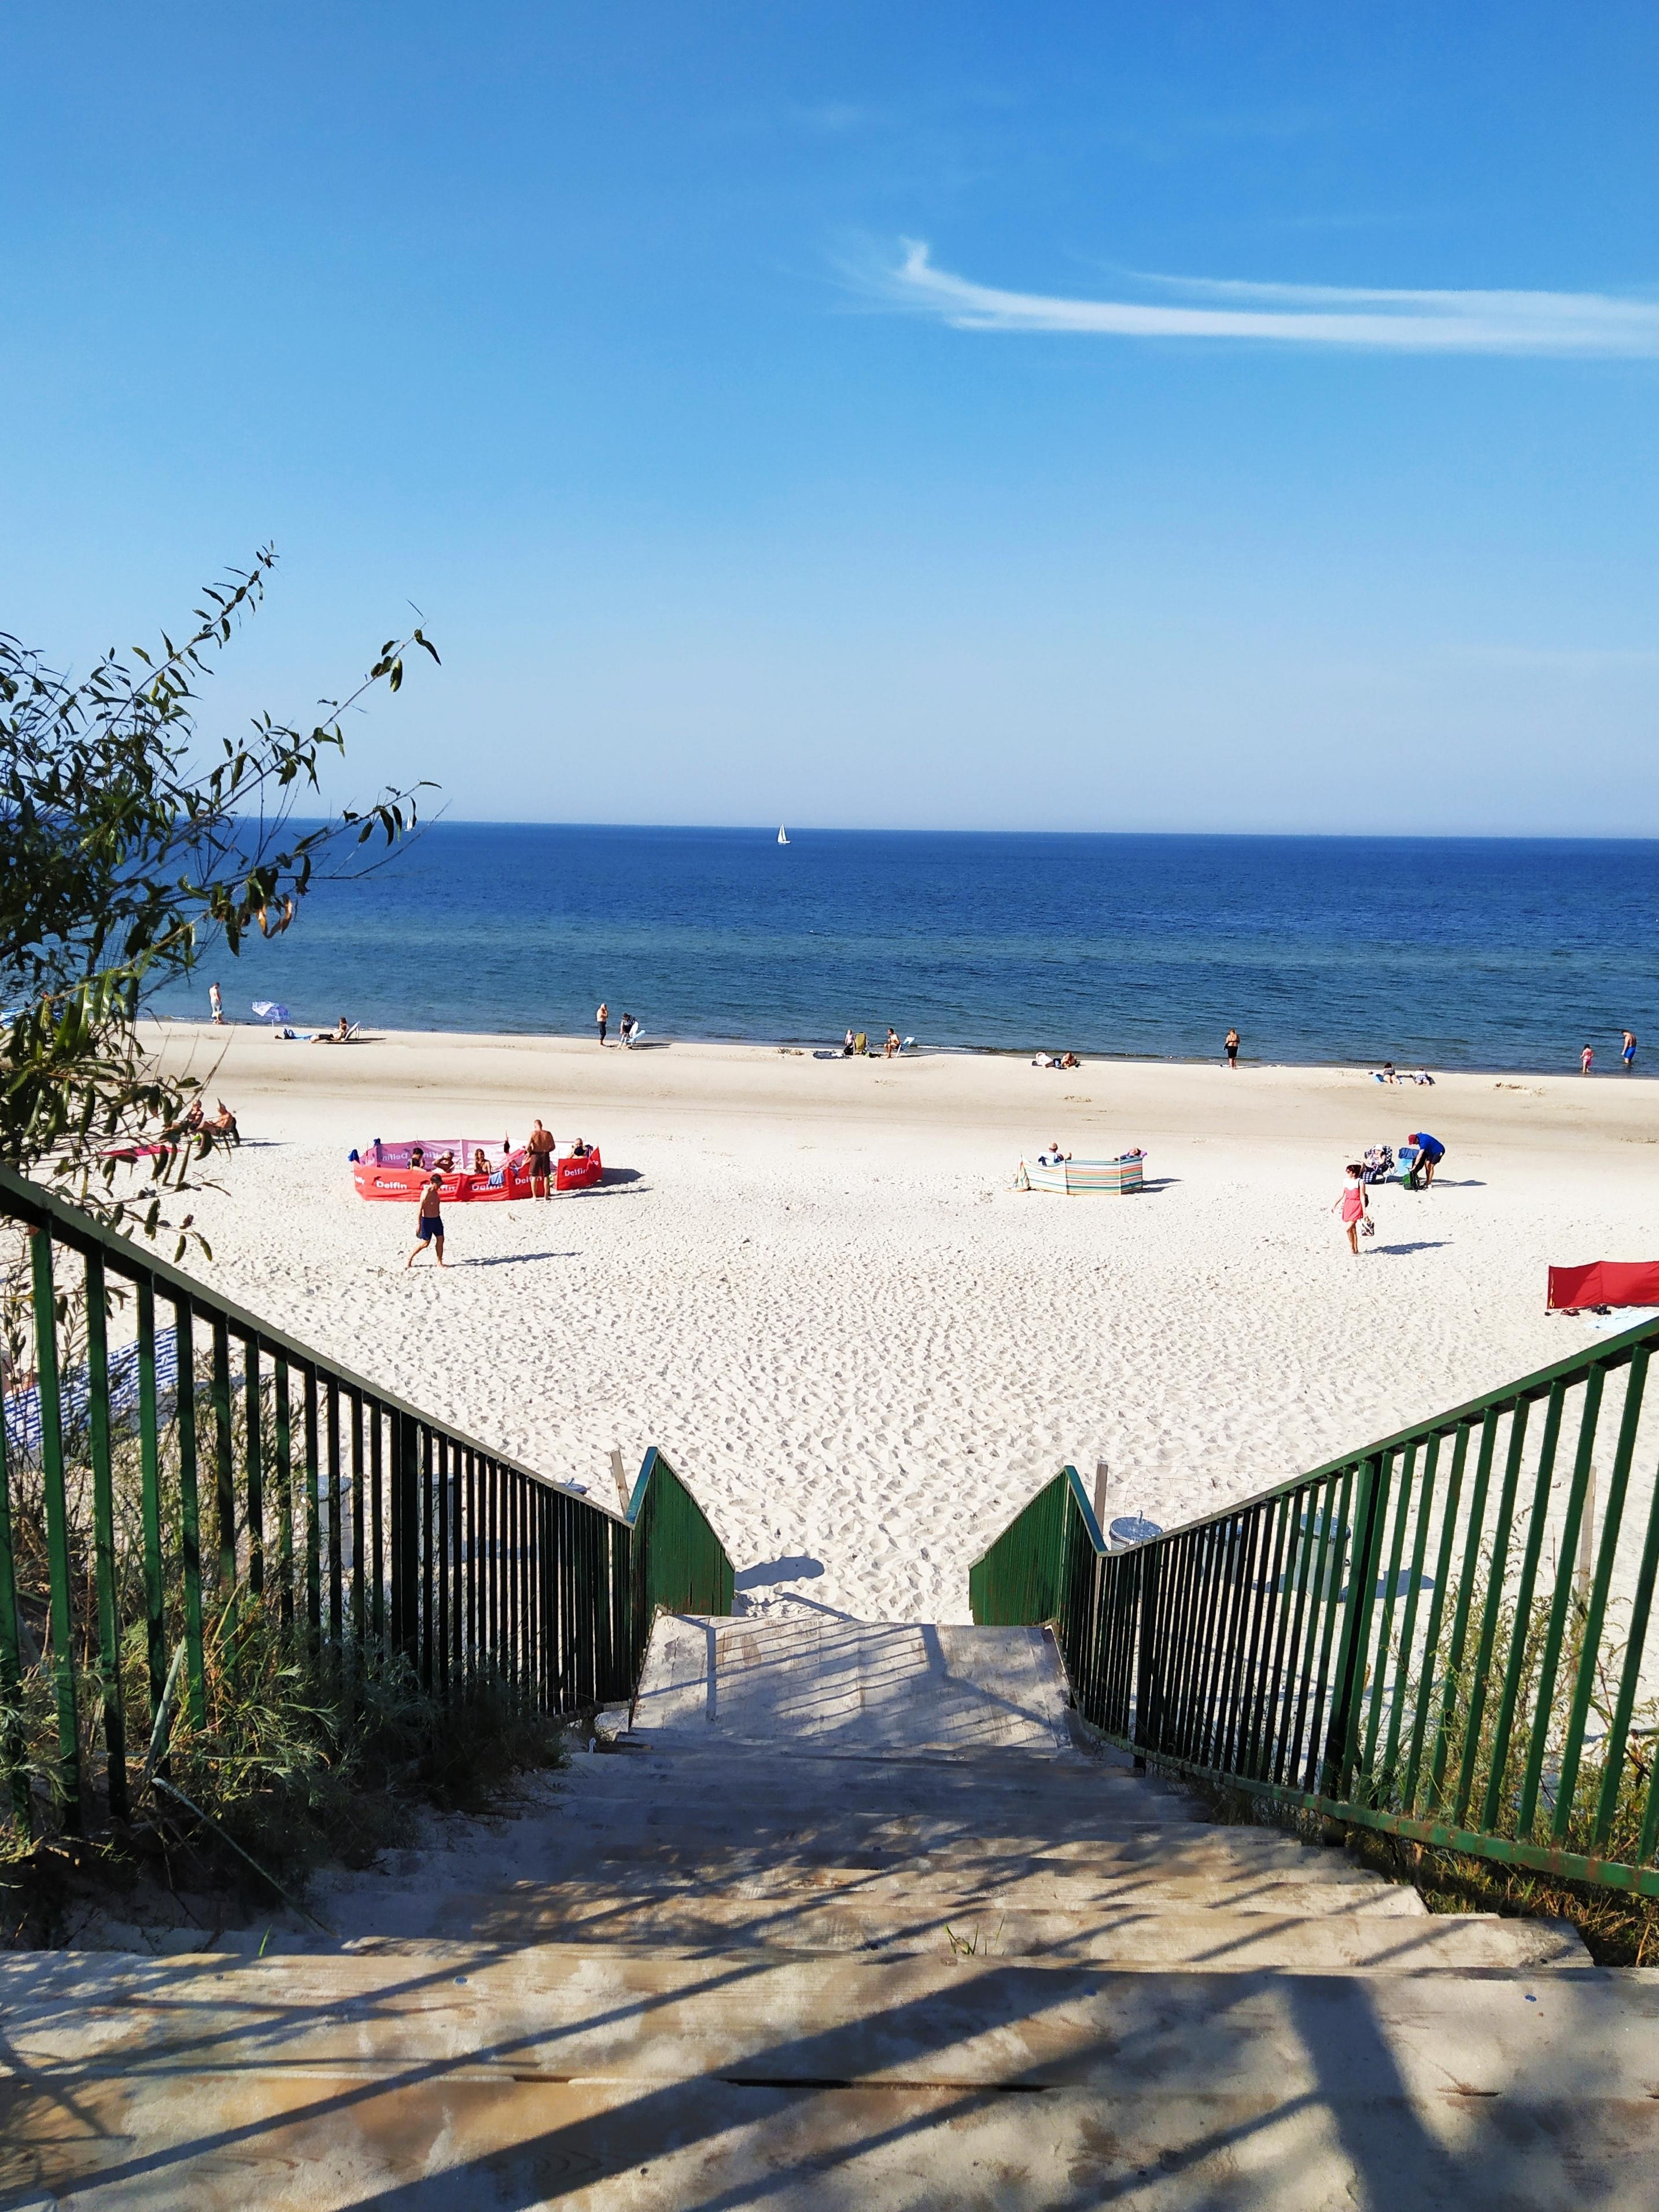 Liebe Grüße von der polnischen Ostsee!
#urlaub #ostsee #sonne #strand